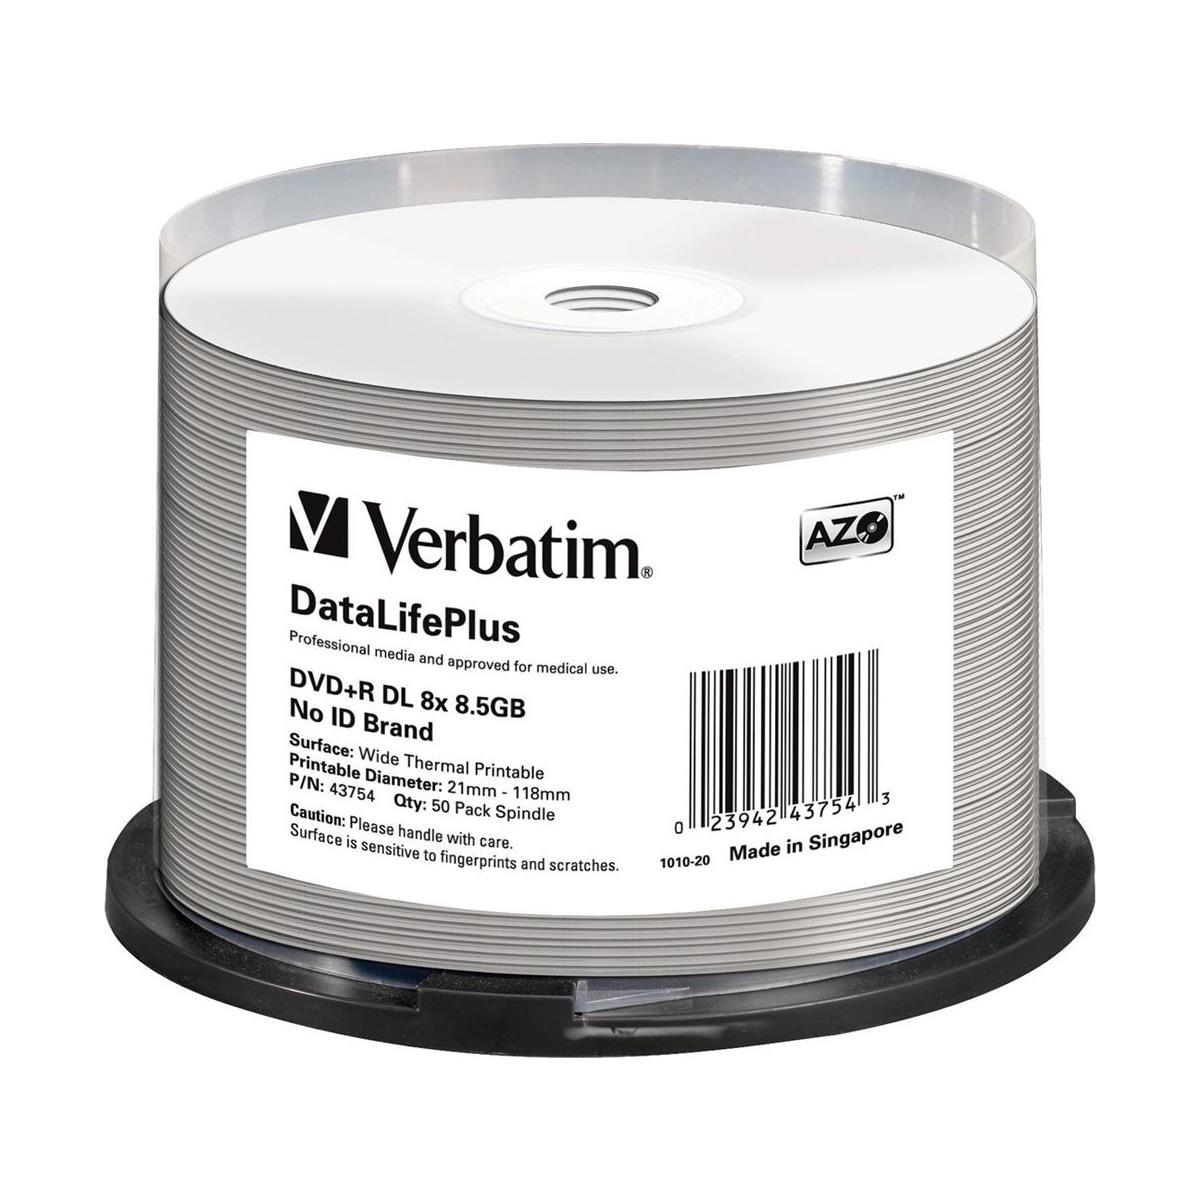 Image of Verbatim DVD+R DL 8.5GB Thermal Printable Recordable Discs